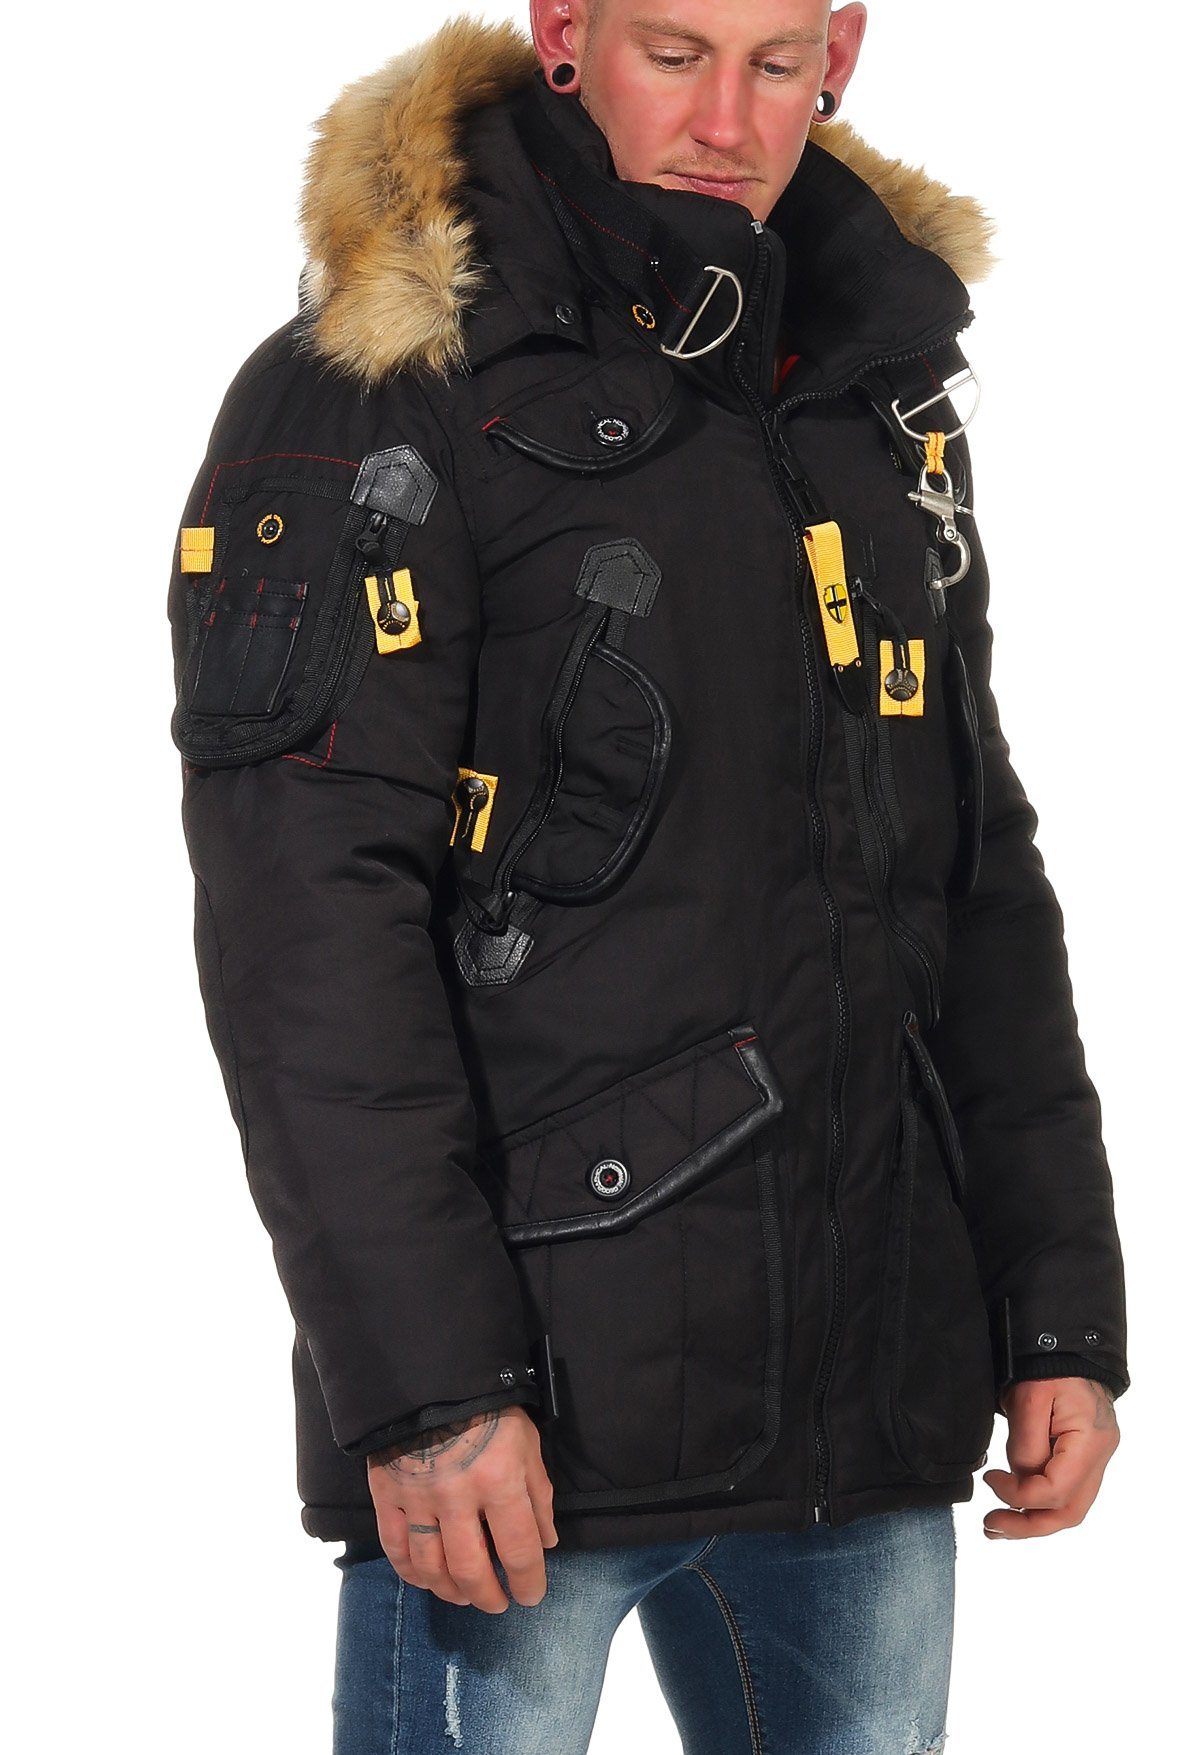 Agaros mit abnehmbar, Geographical Fellbesatz: viele Norway Schwarz individuell Kapuze beides Winterjacke Taschen